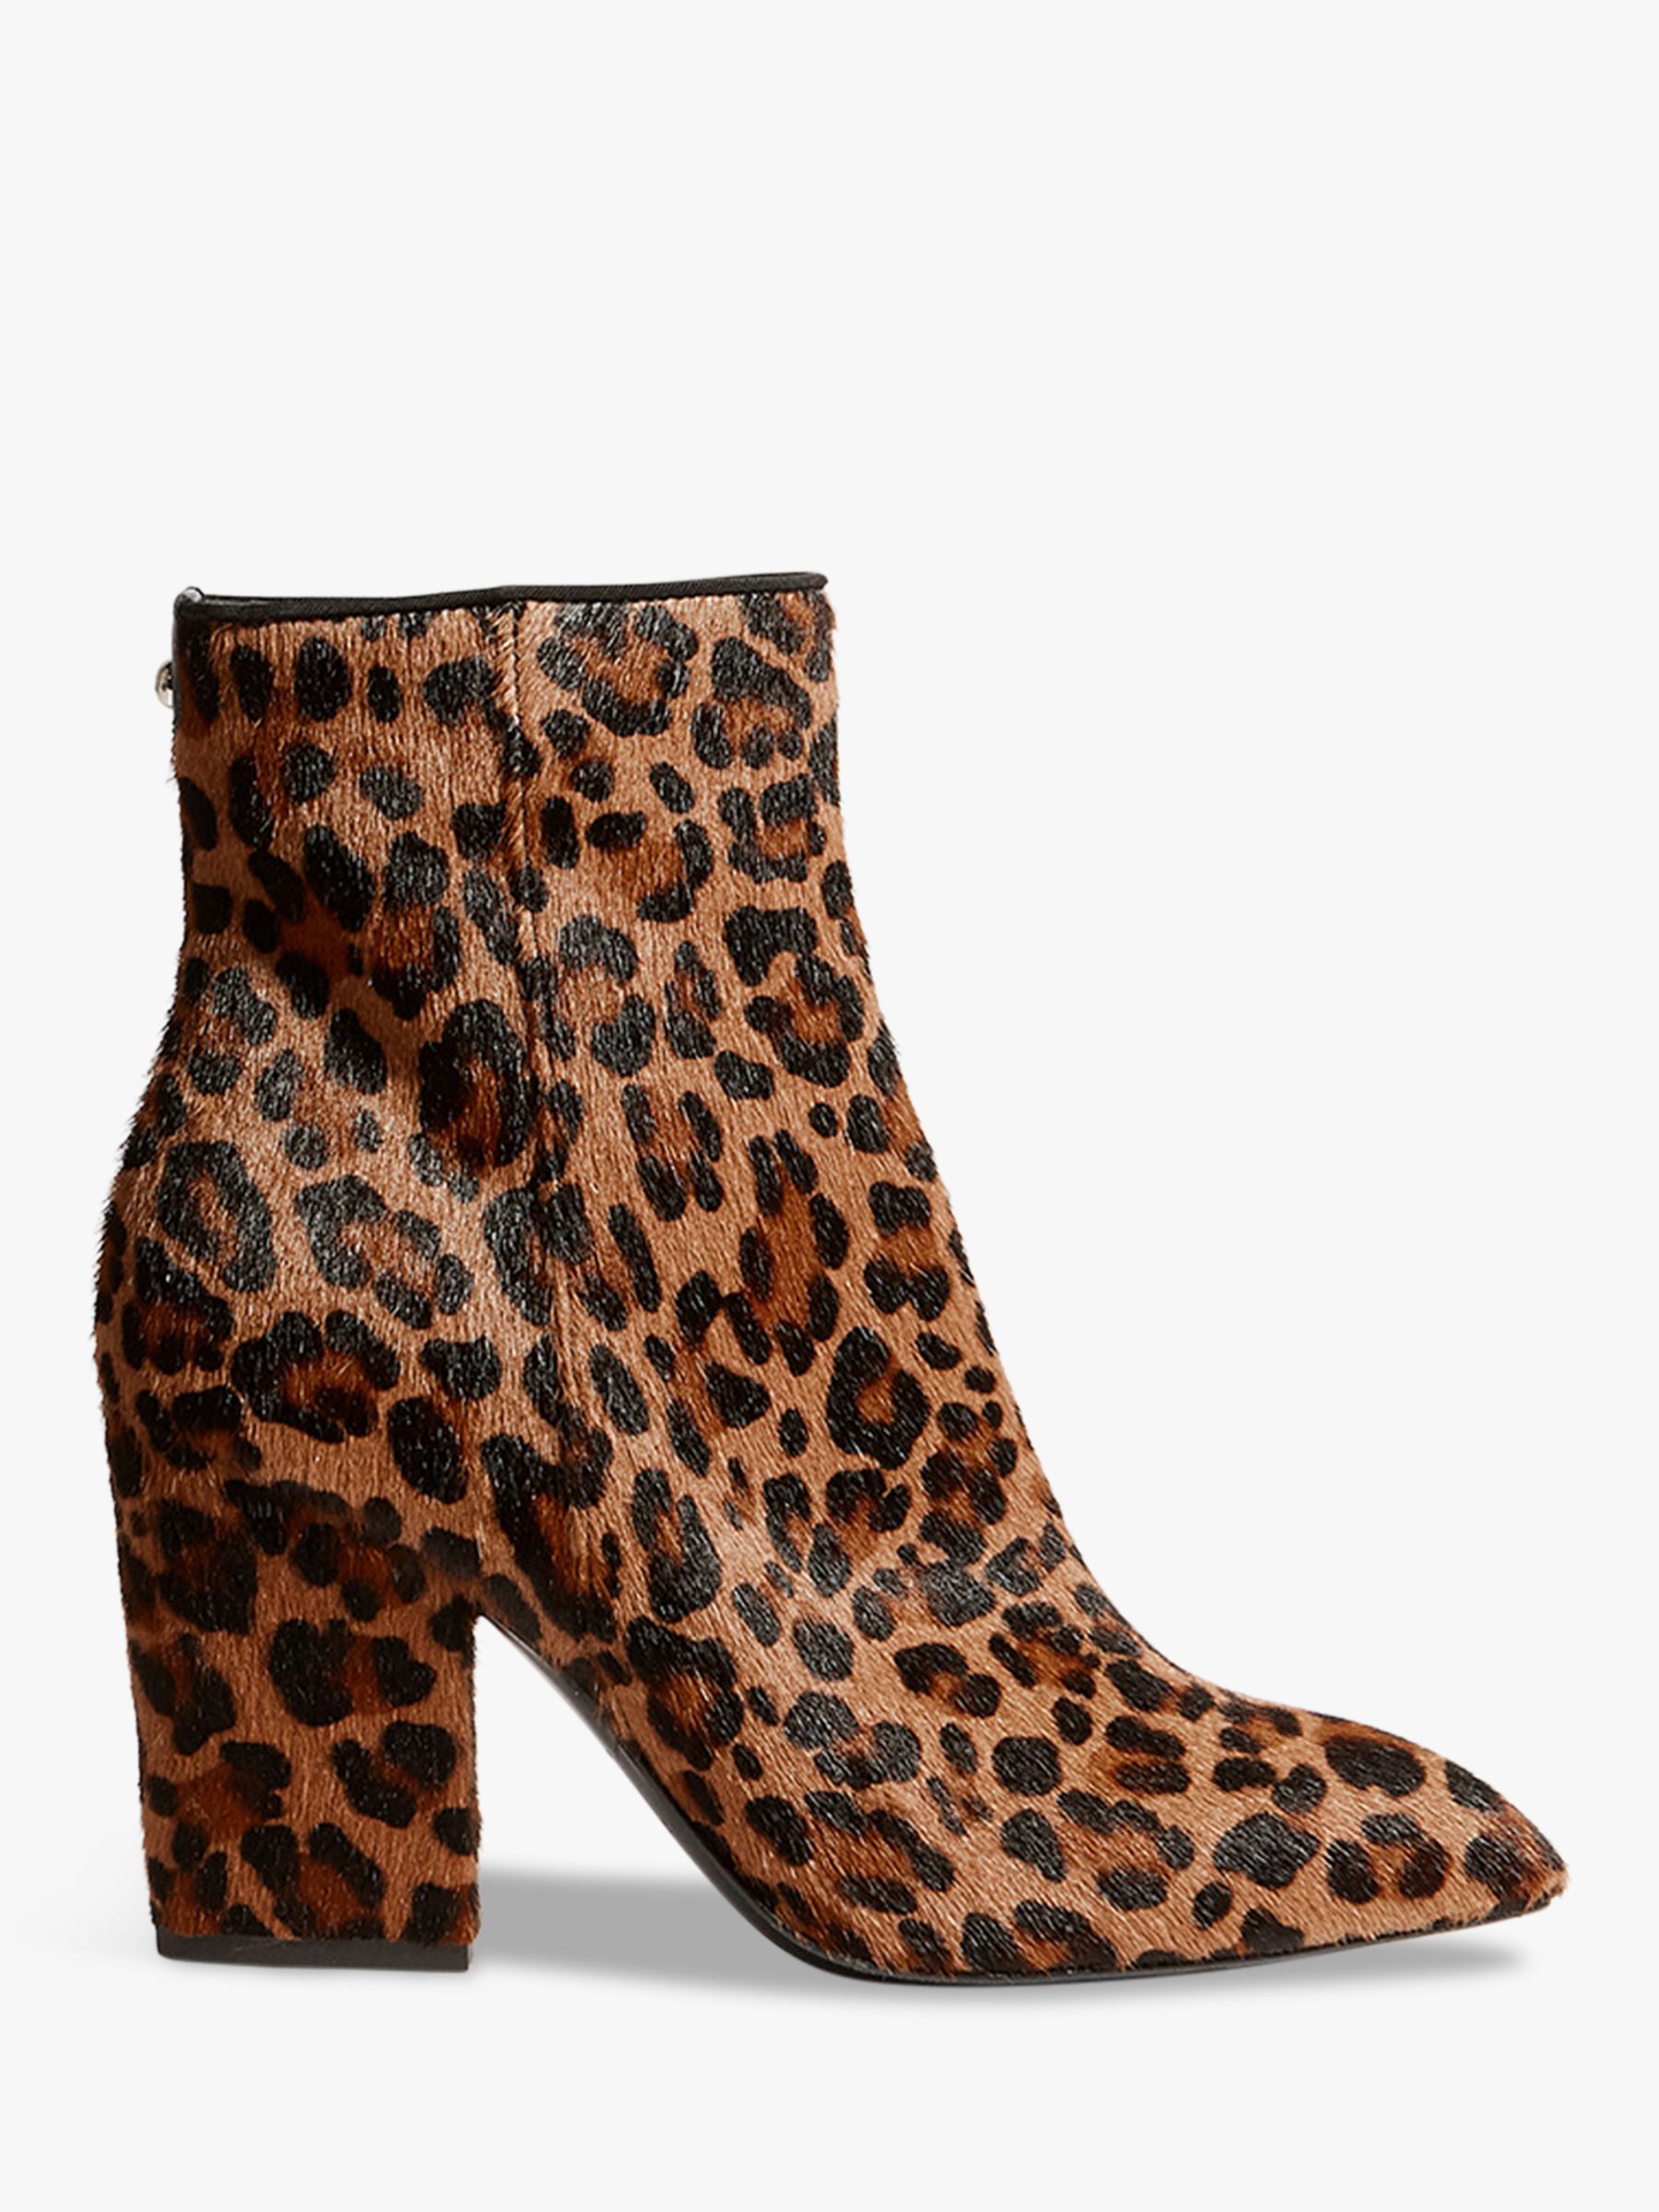 Karen Millen Block Heel Ankle Boots, Leopard Leather at John Lewis ...